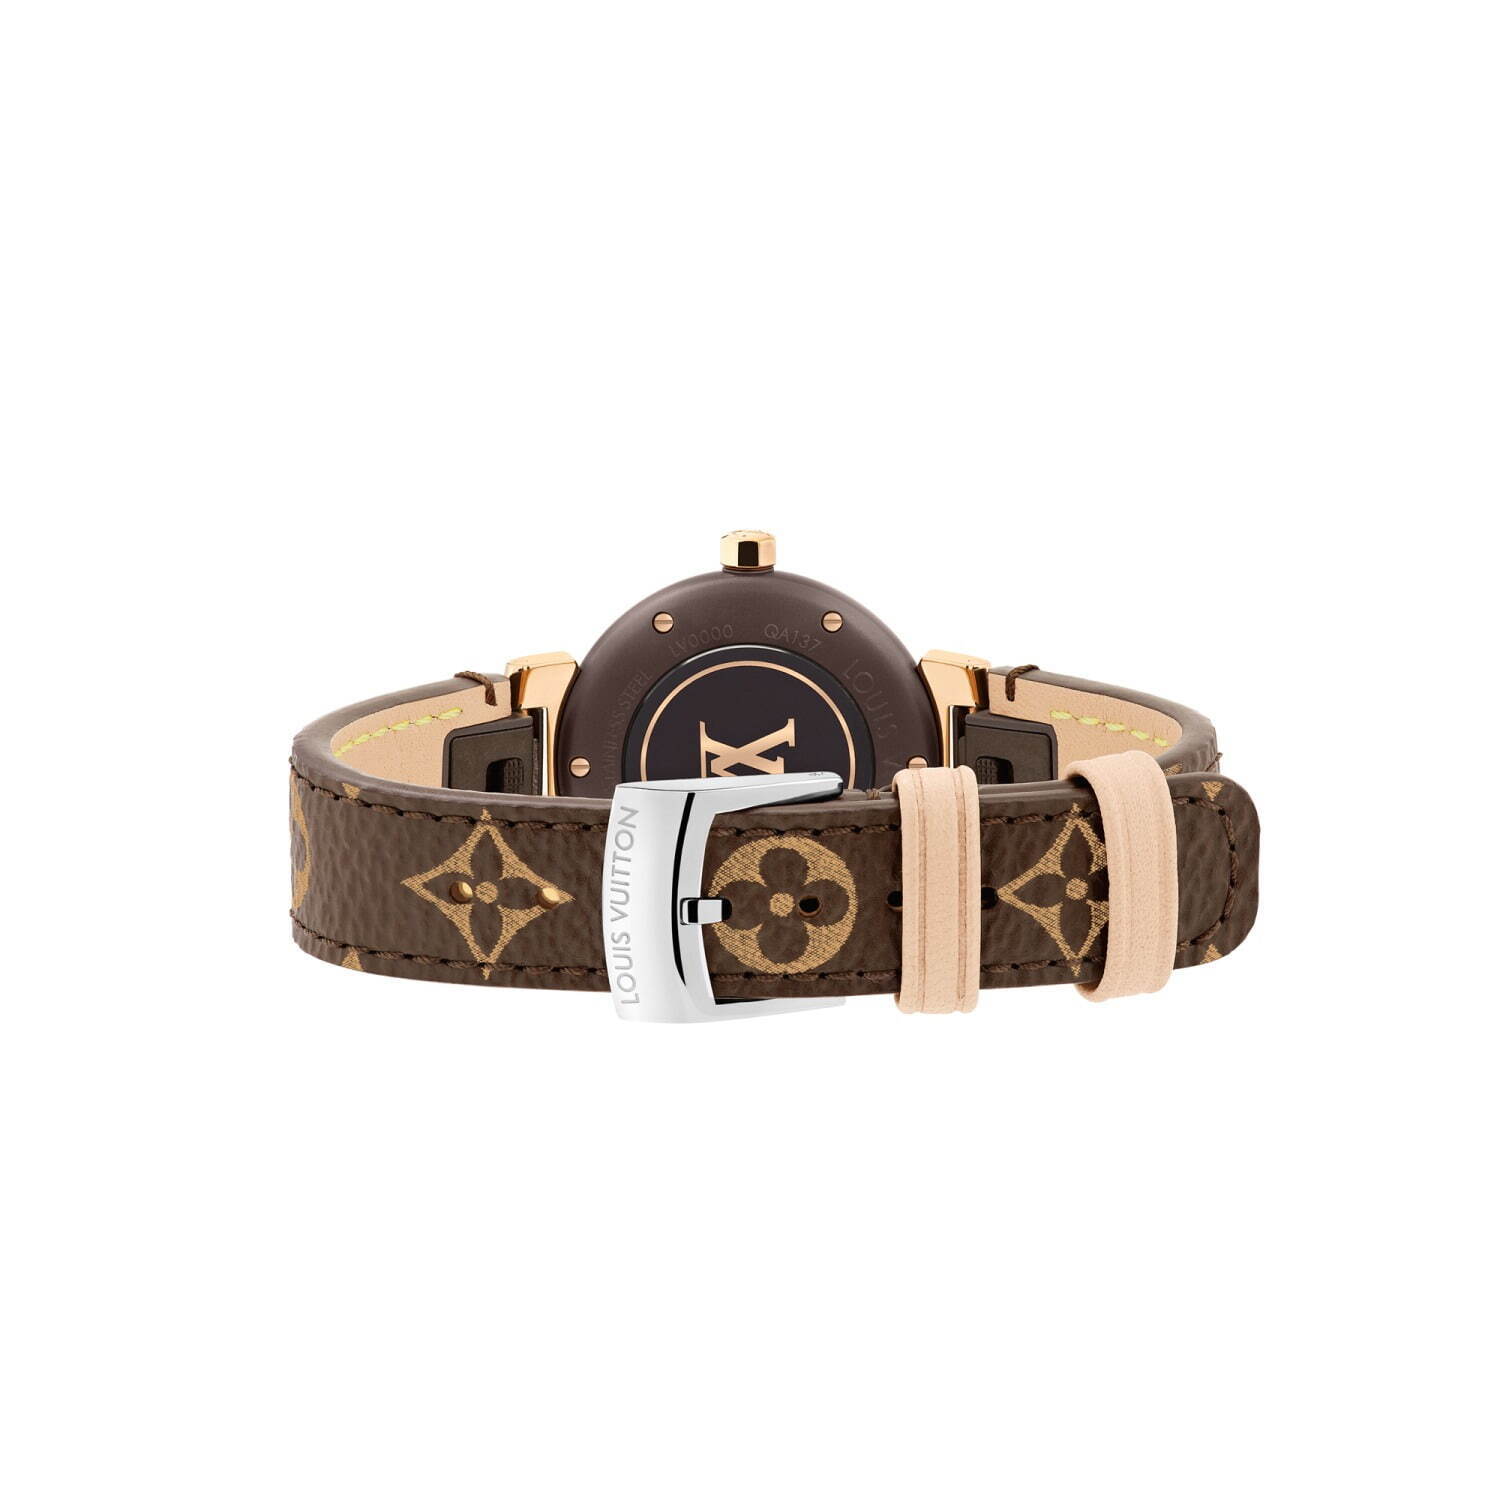 ルイ・ヴィトンの腕時計「タンブール モノグラム」新作、モノグラム